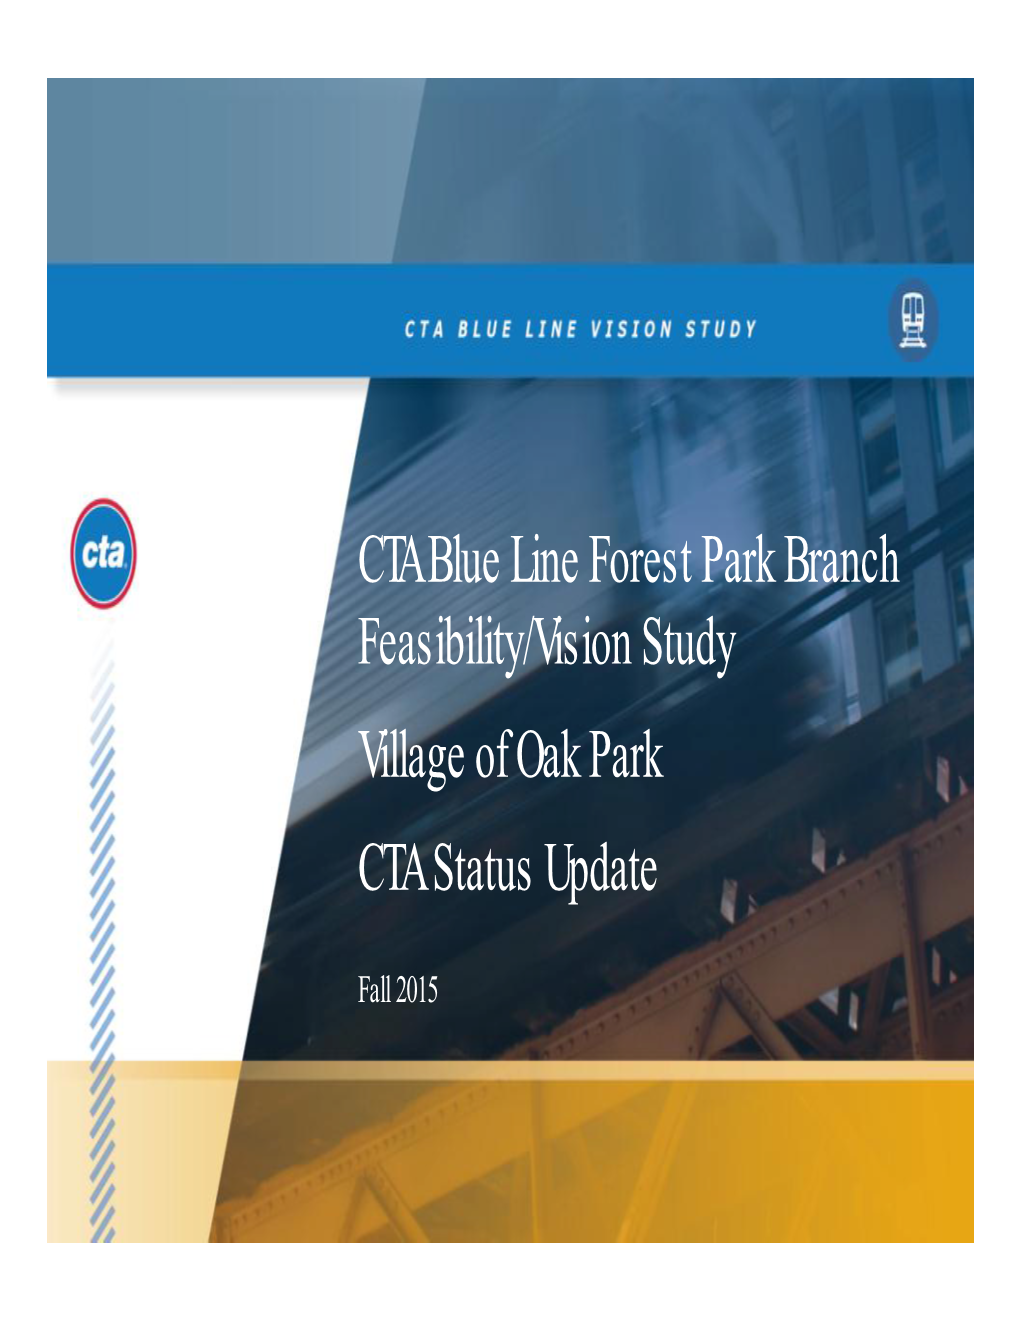 CTA Blue Line Forest Park Branch Feasibility/Vision Study Village of Oak Park CTA Status Update